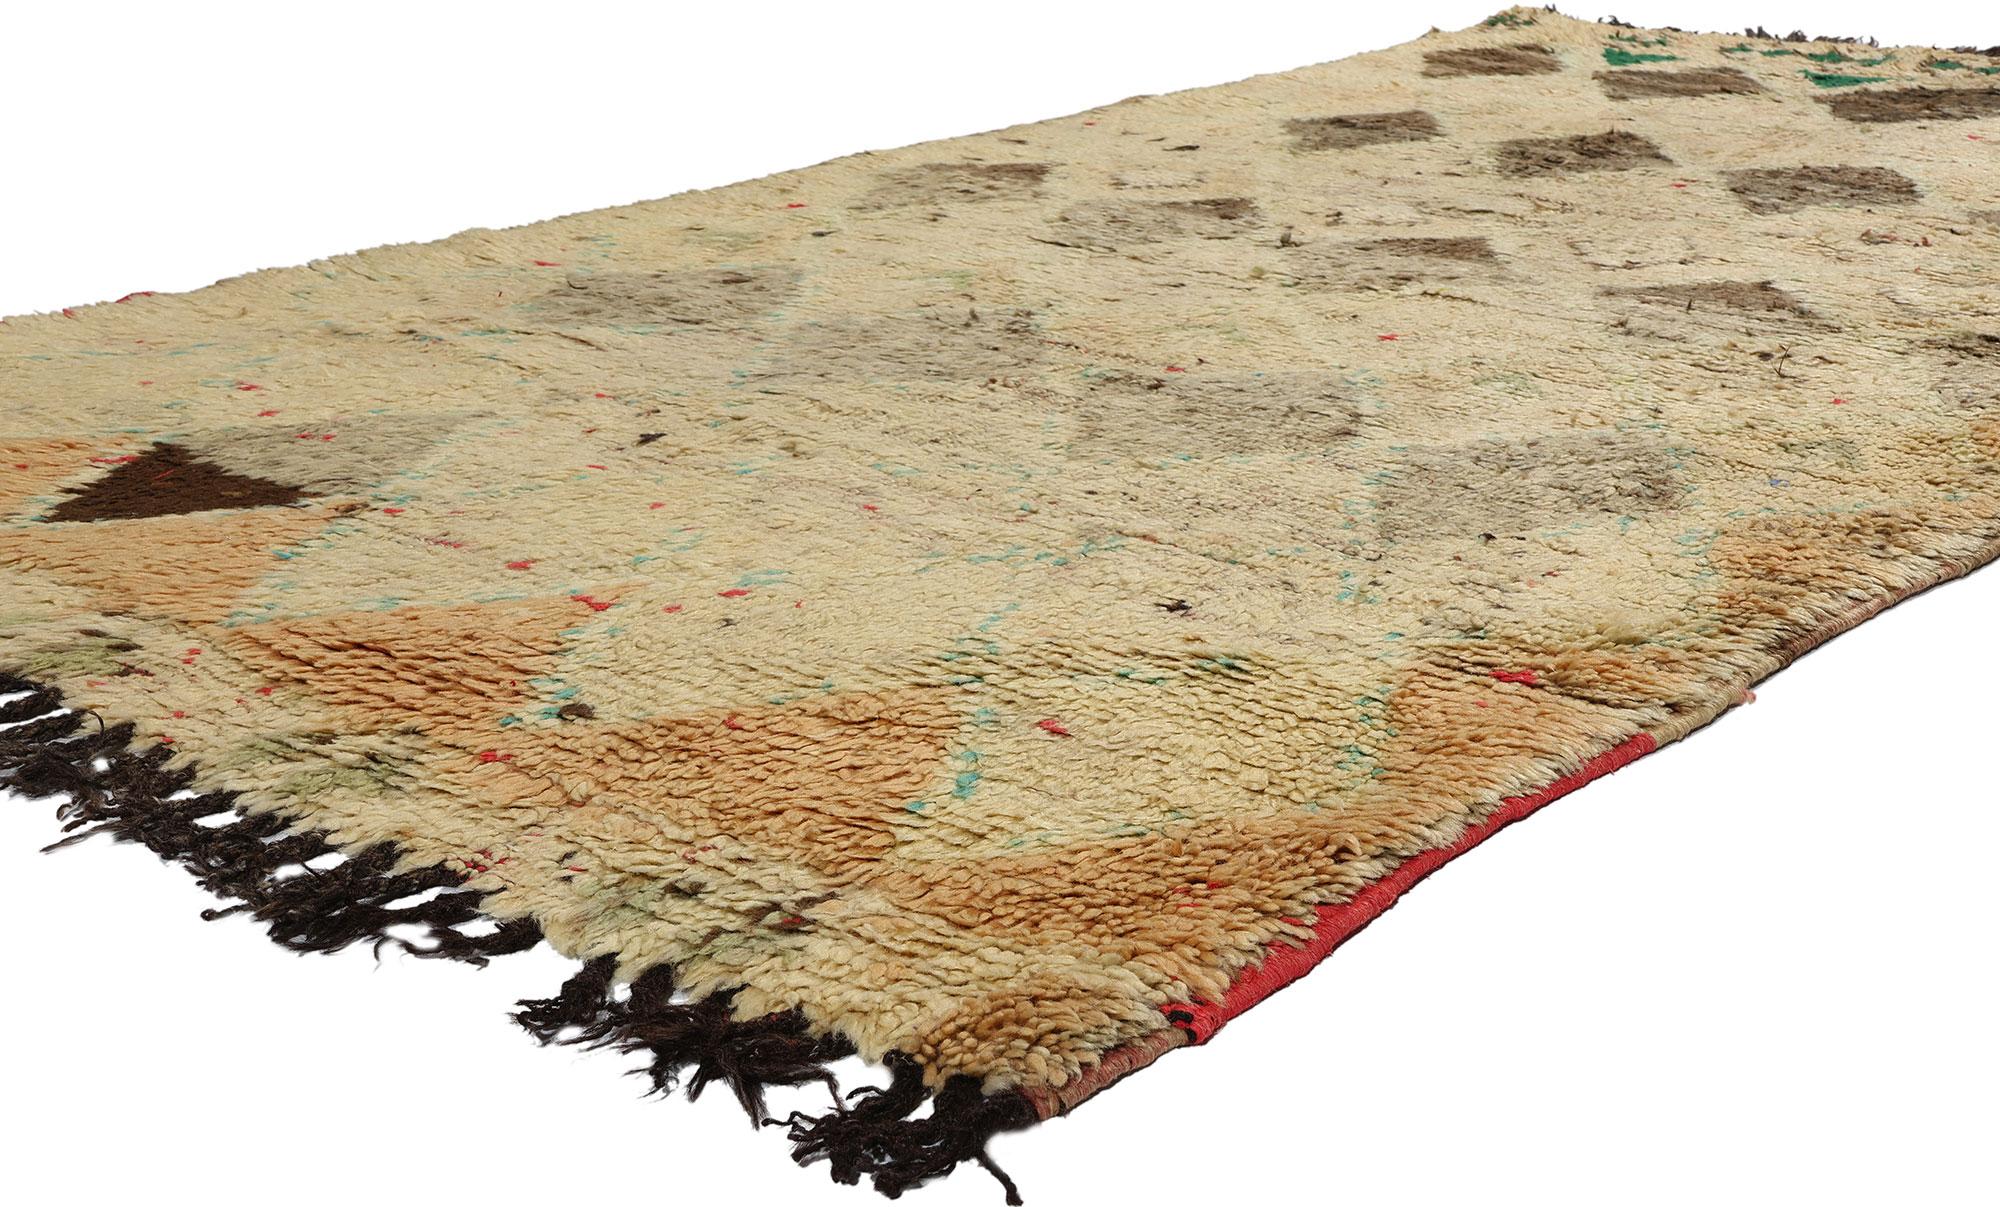 21729 Vintage Boujad Marokkanischer Teppich, 04'08 x 08'08. Die aus der marokkanischen Region Boujad stammenden Boujad-Teppiche sind nicht nur zweckdienlich, sondern auch exquisite handgewebte Meisterwerke, die das lebendige künstlerische Erbe der